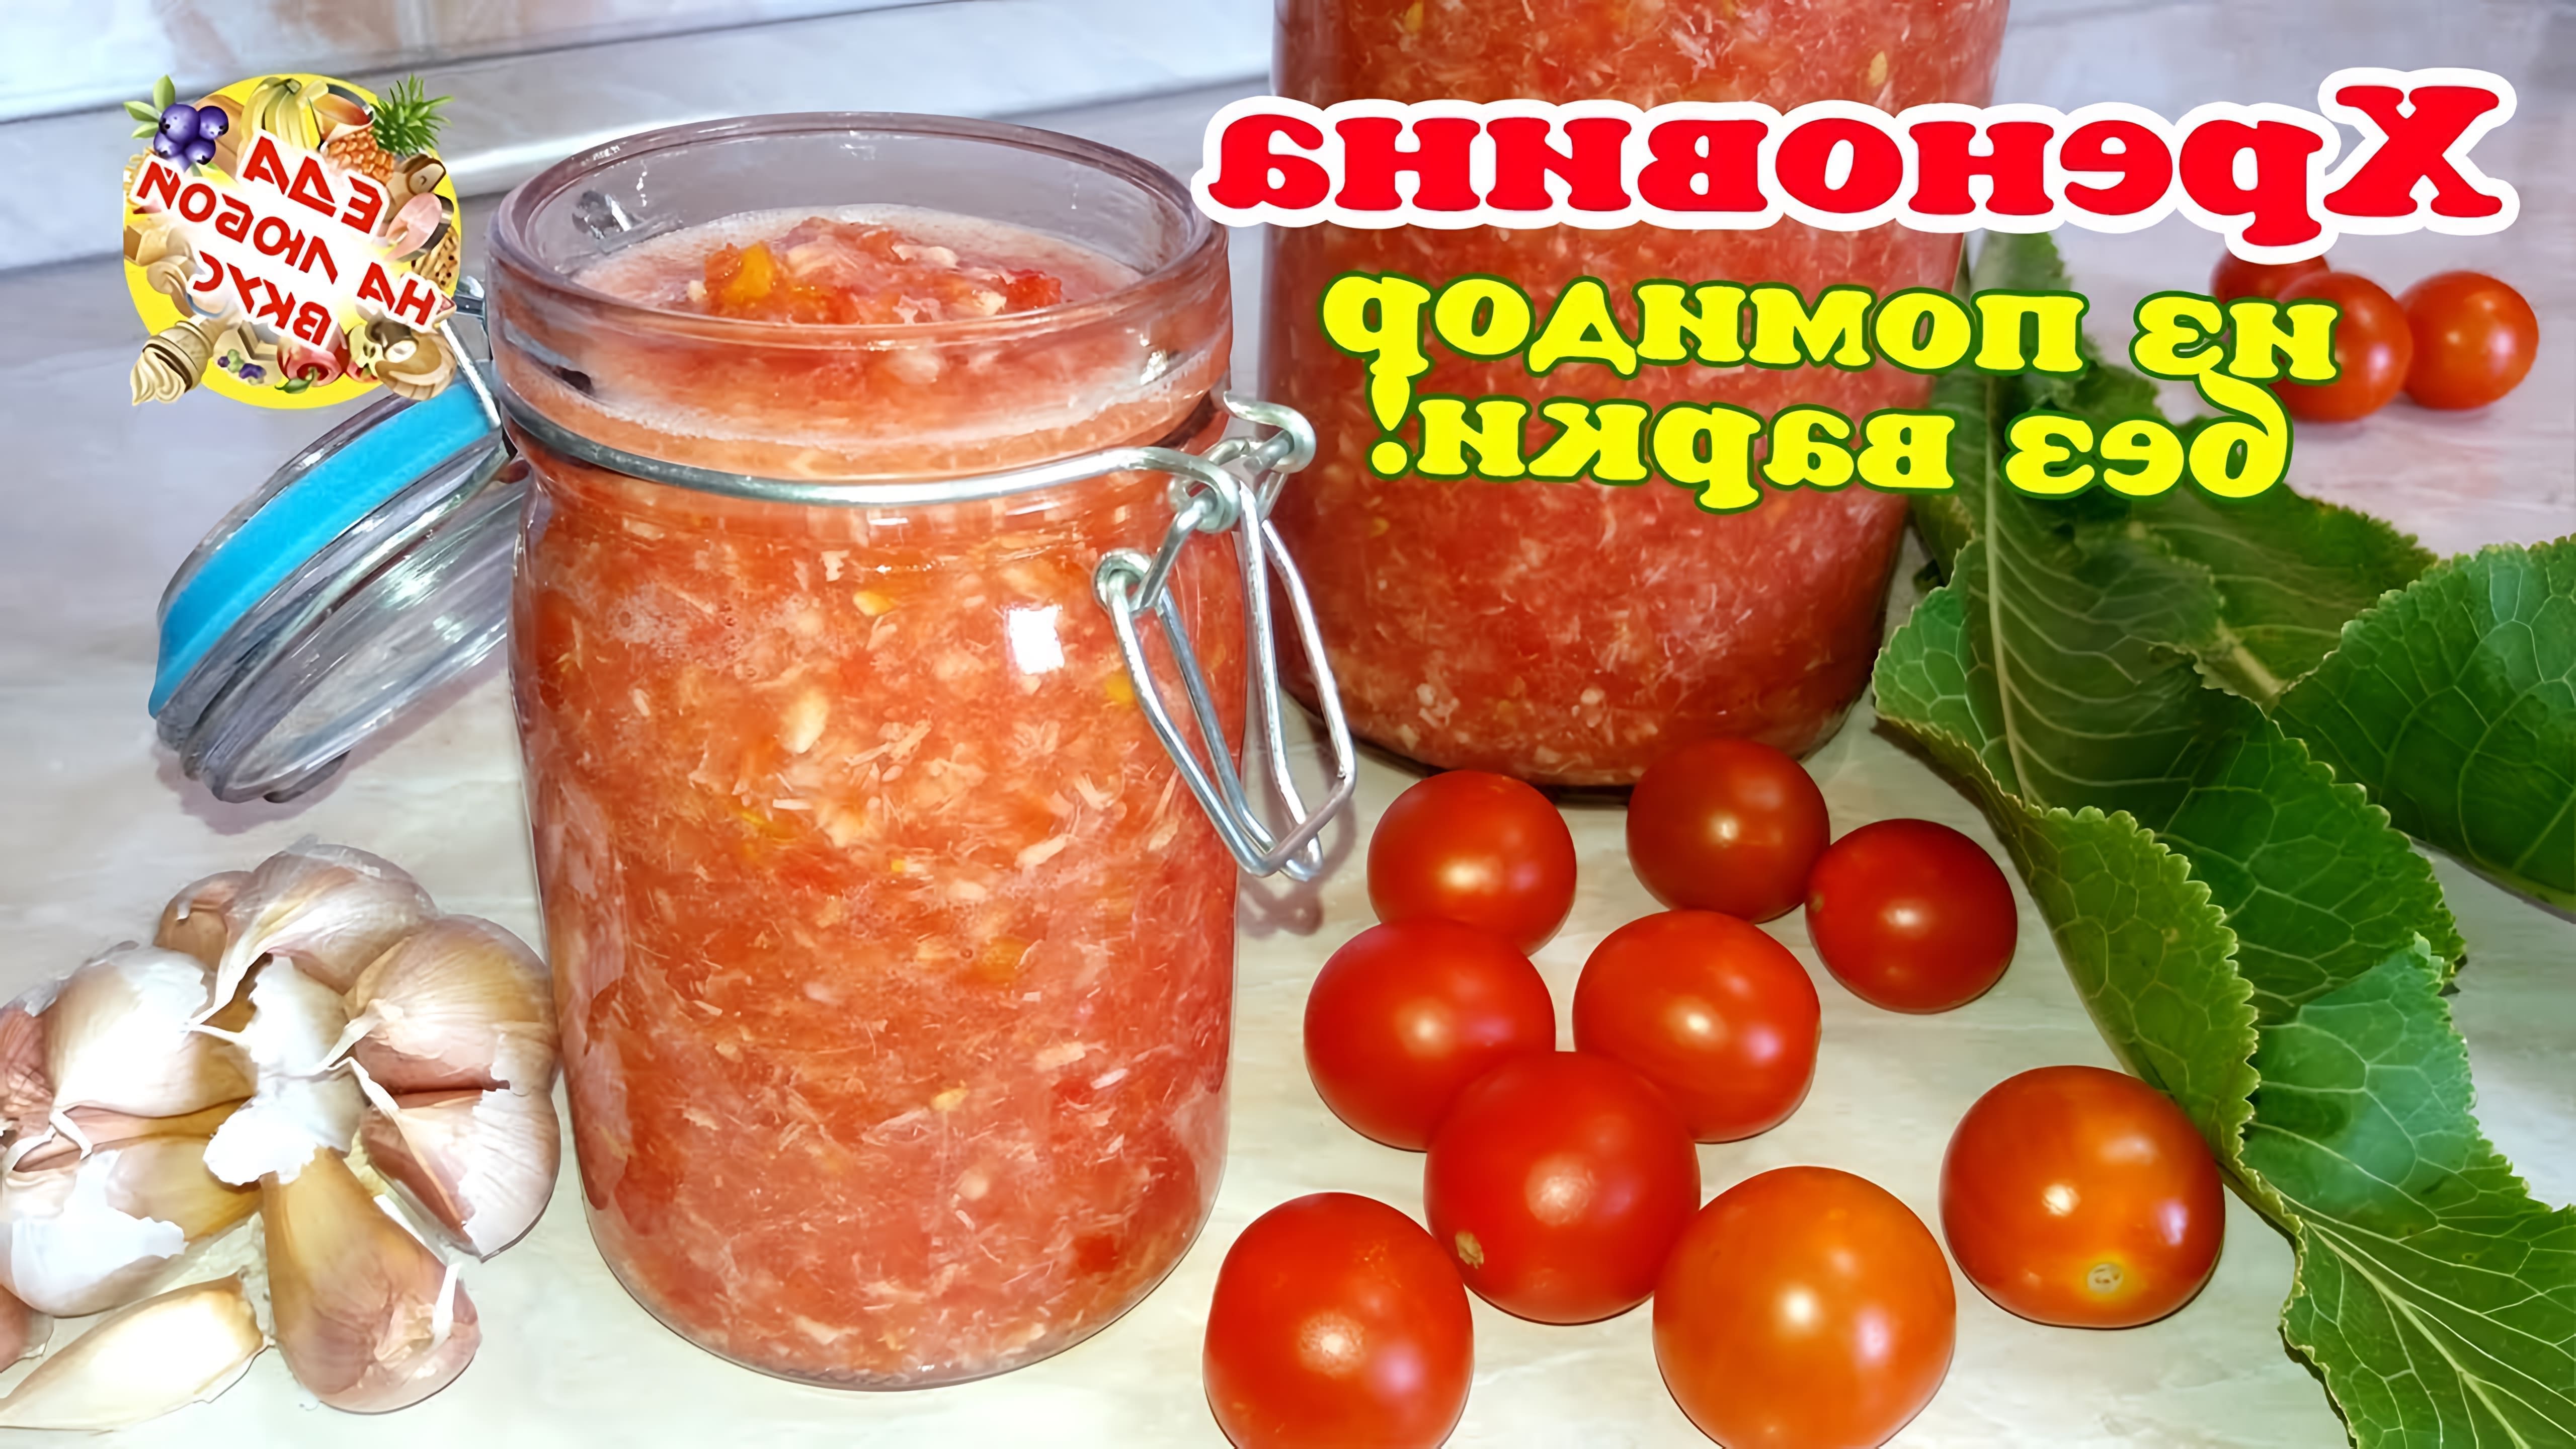 В этом видео демонстрируется процесс приготовления русской закуски "Огонек с хреном" из помидоров и чеснока